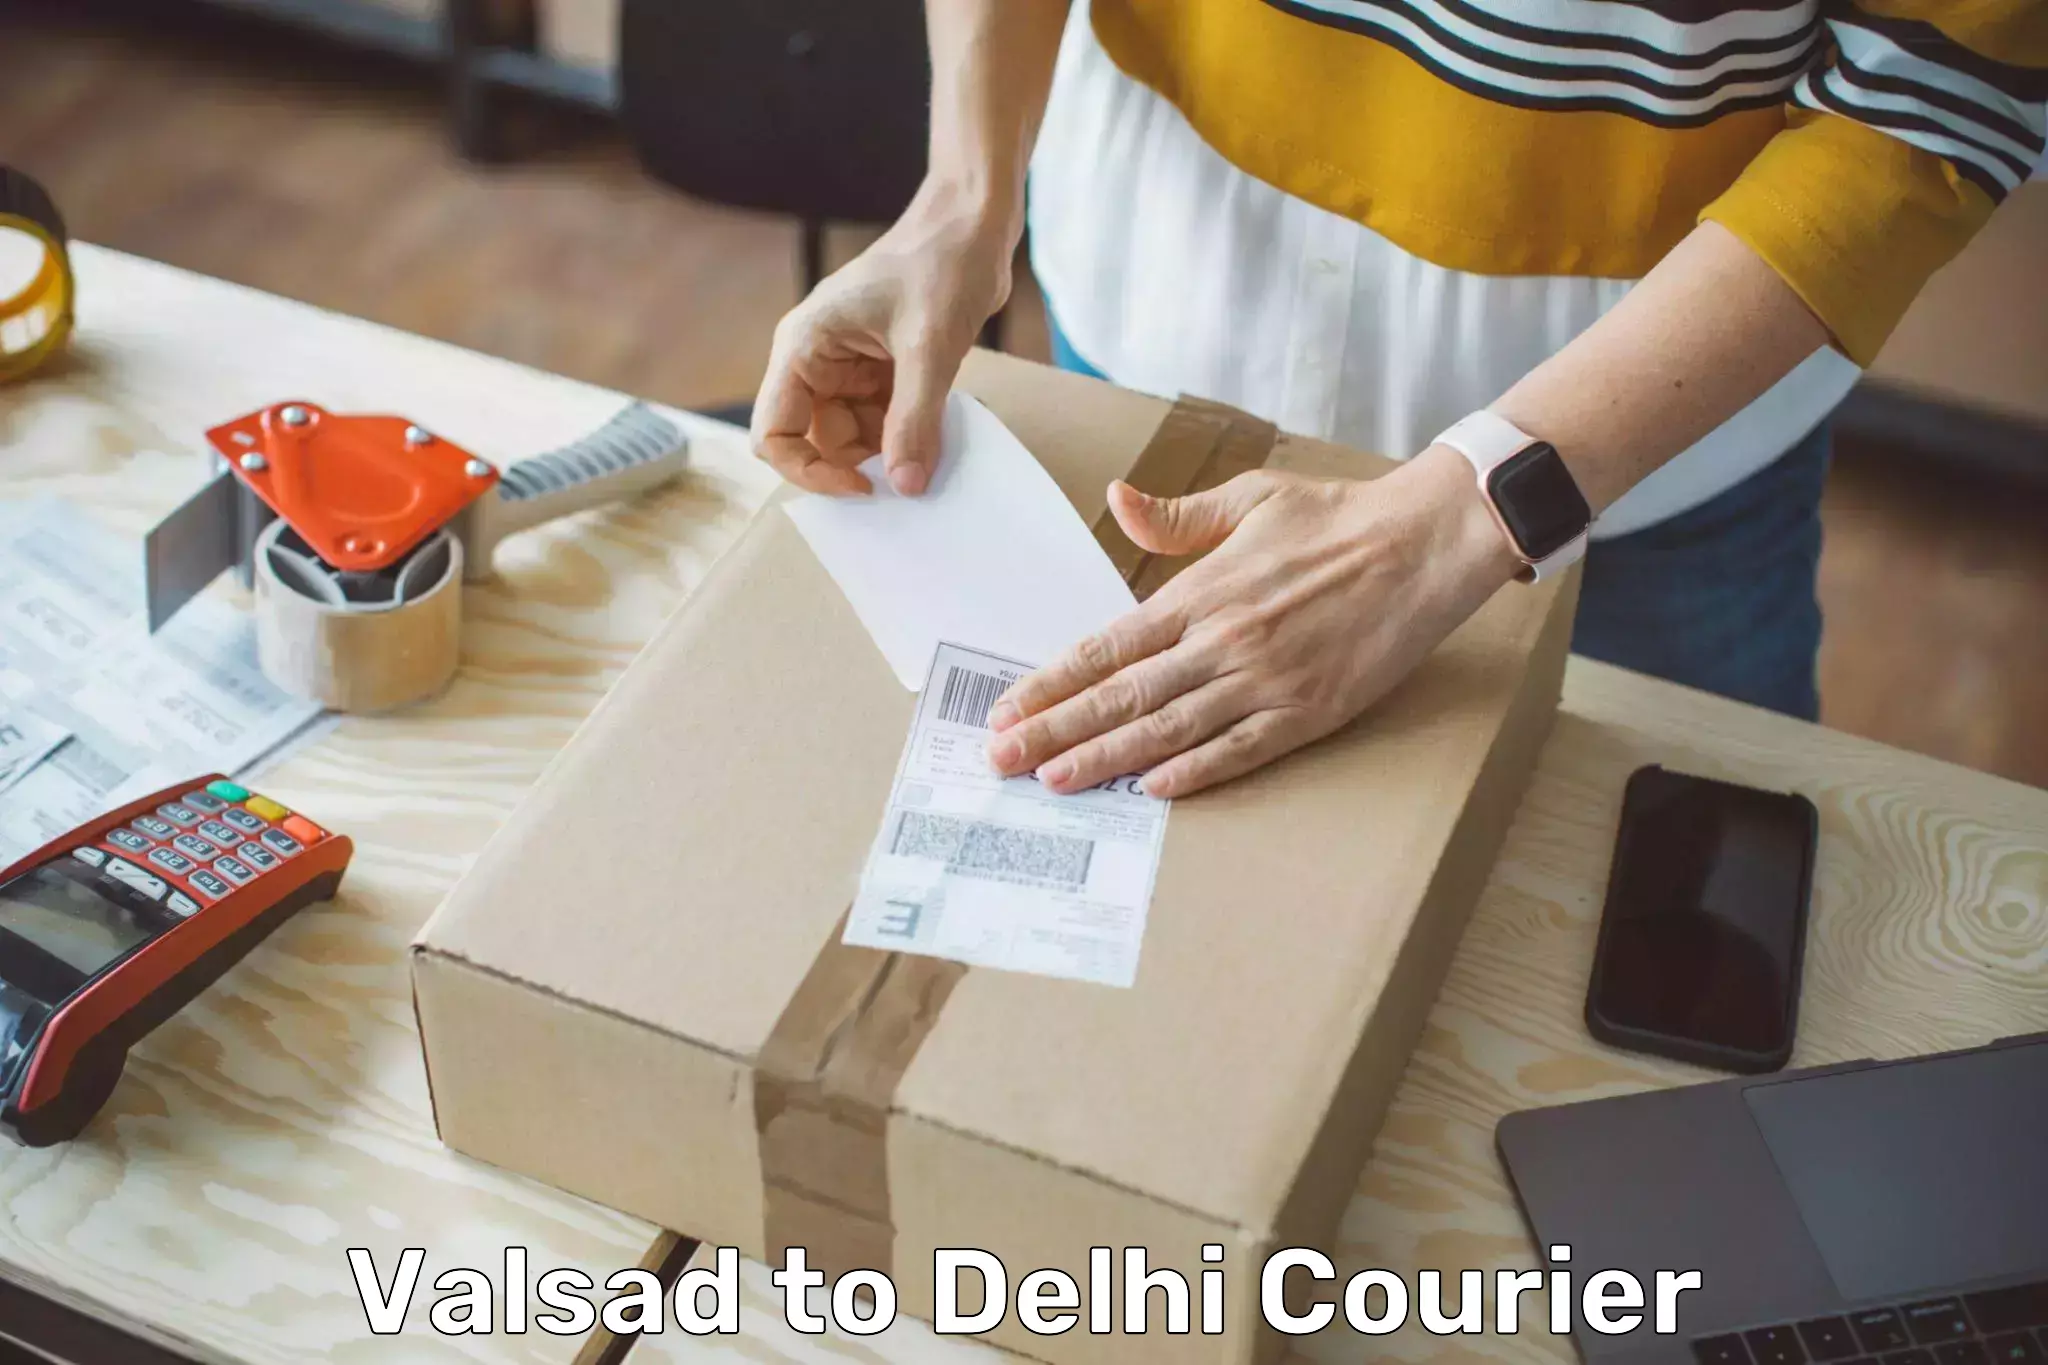 Fast shipping solutions Valsad to Delhi